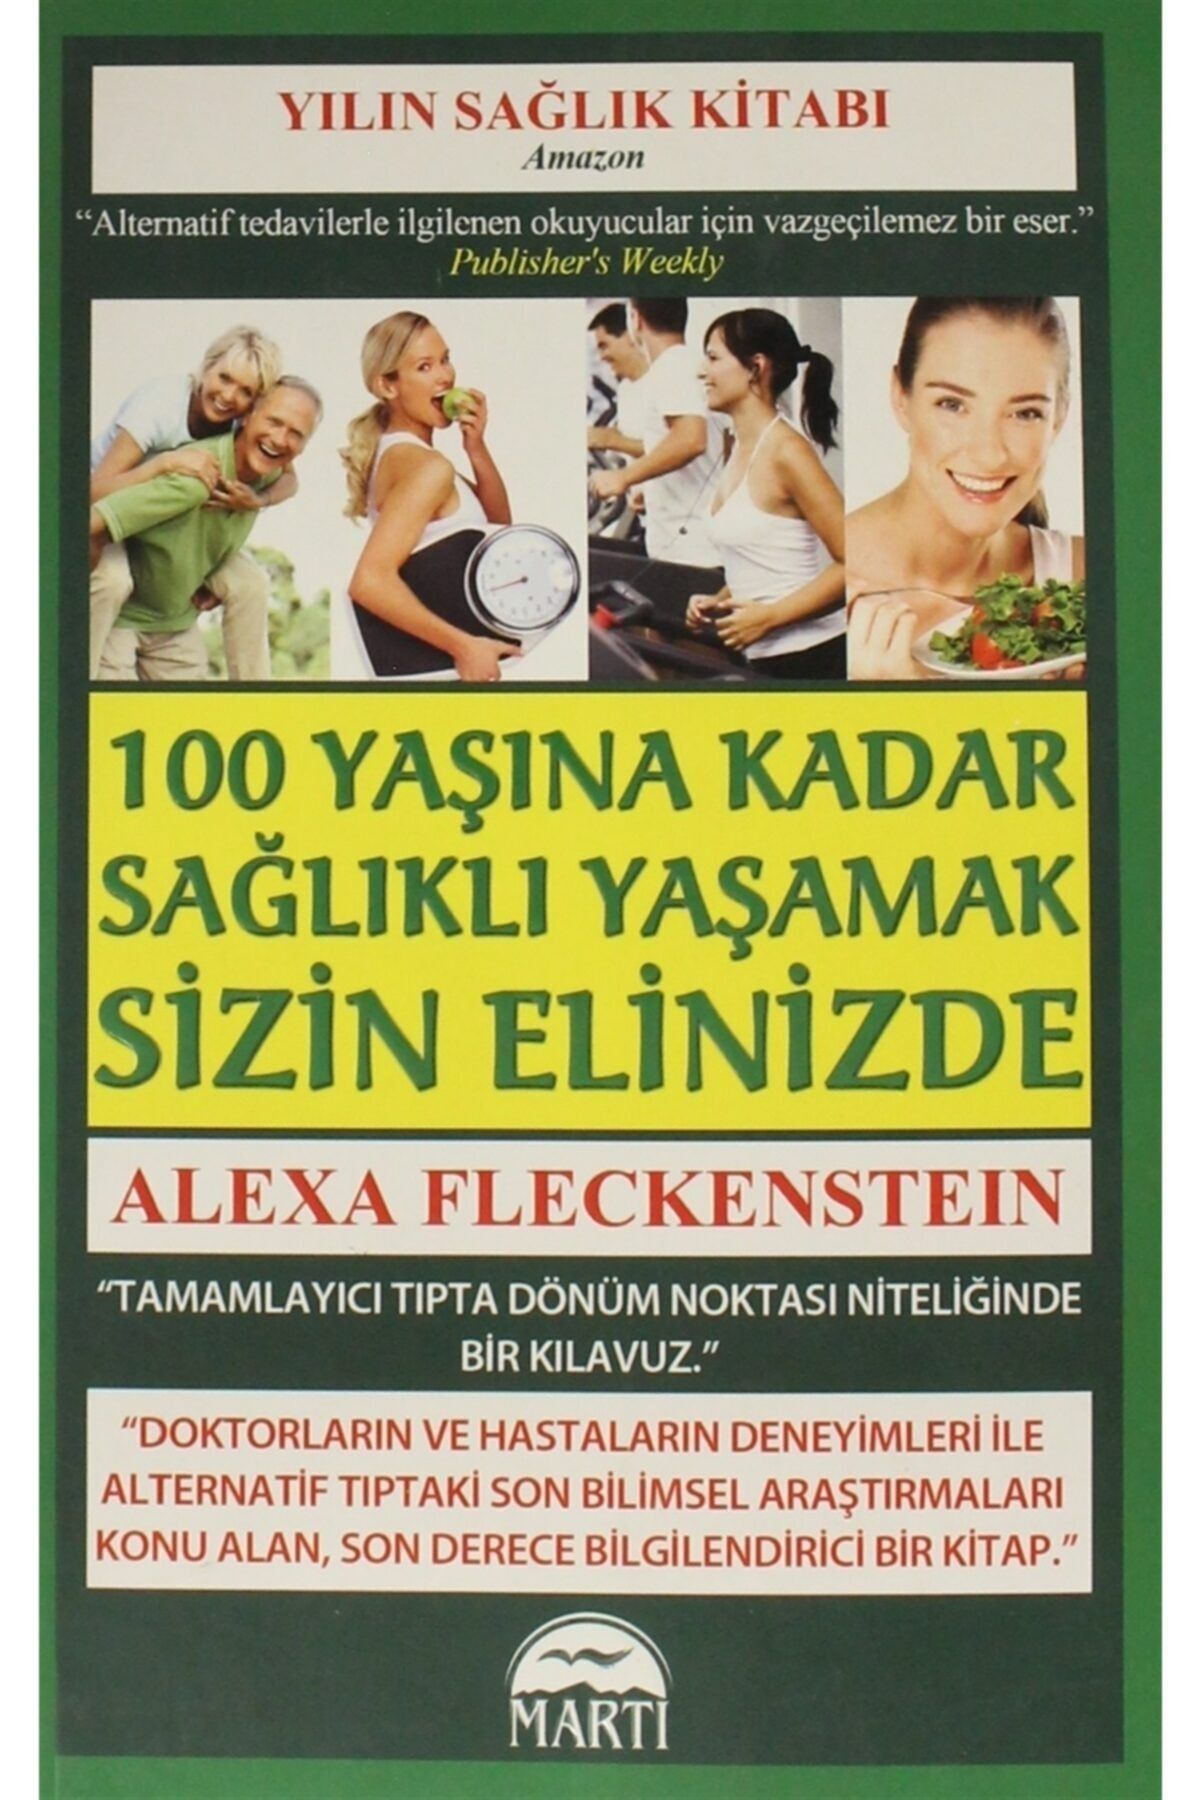 Martı Yayınları 100 Yaşına Kadar Sağlıklı Yaşamak Sizin Elinizde - Alexa Fleckenstein 9786054335886